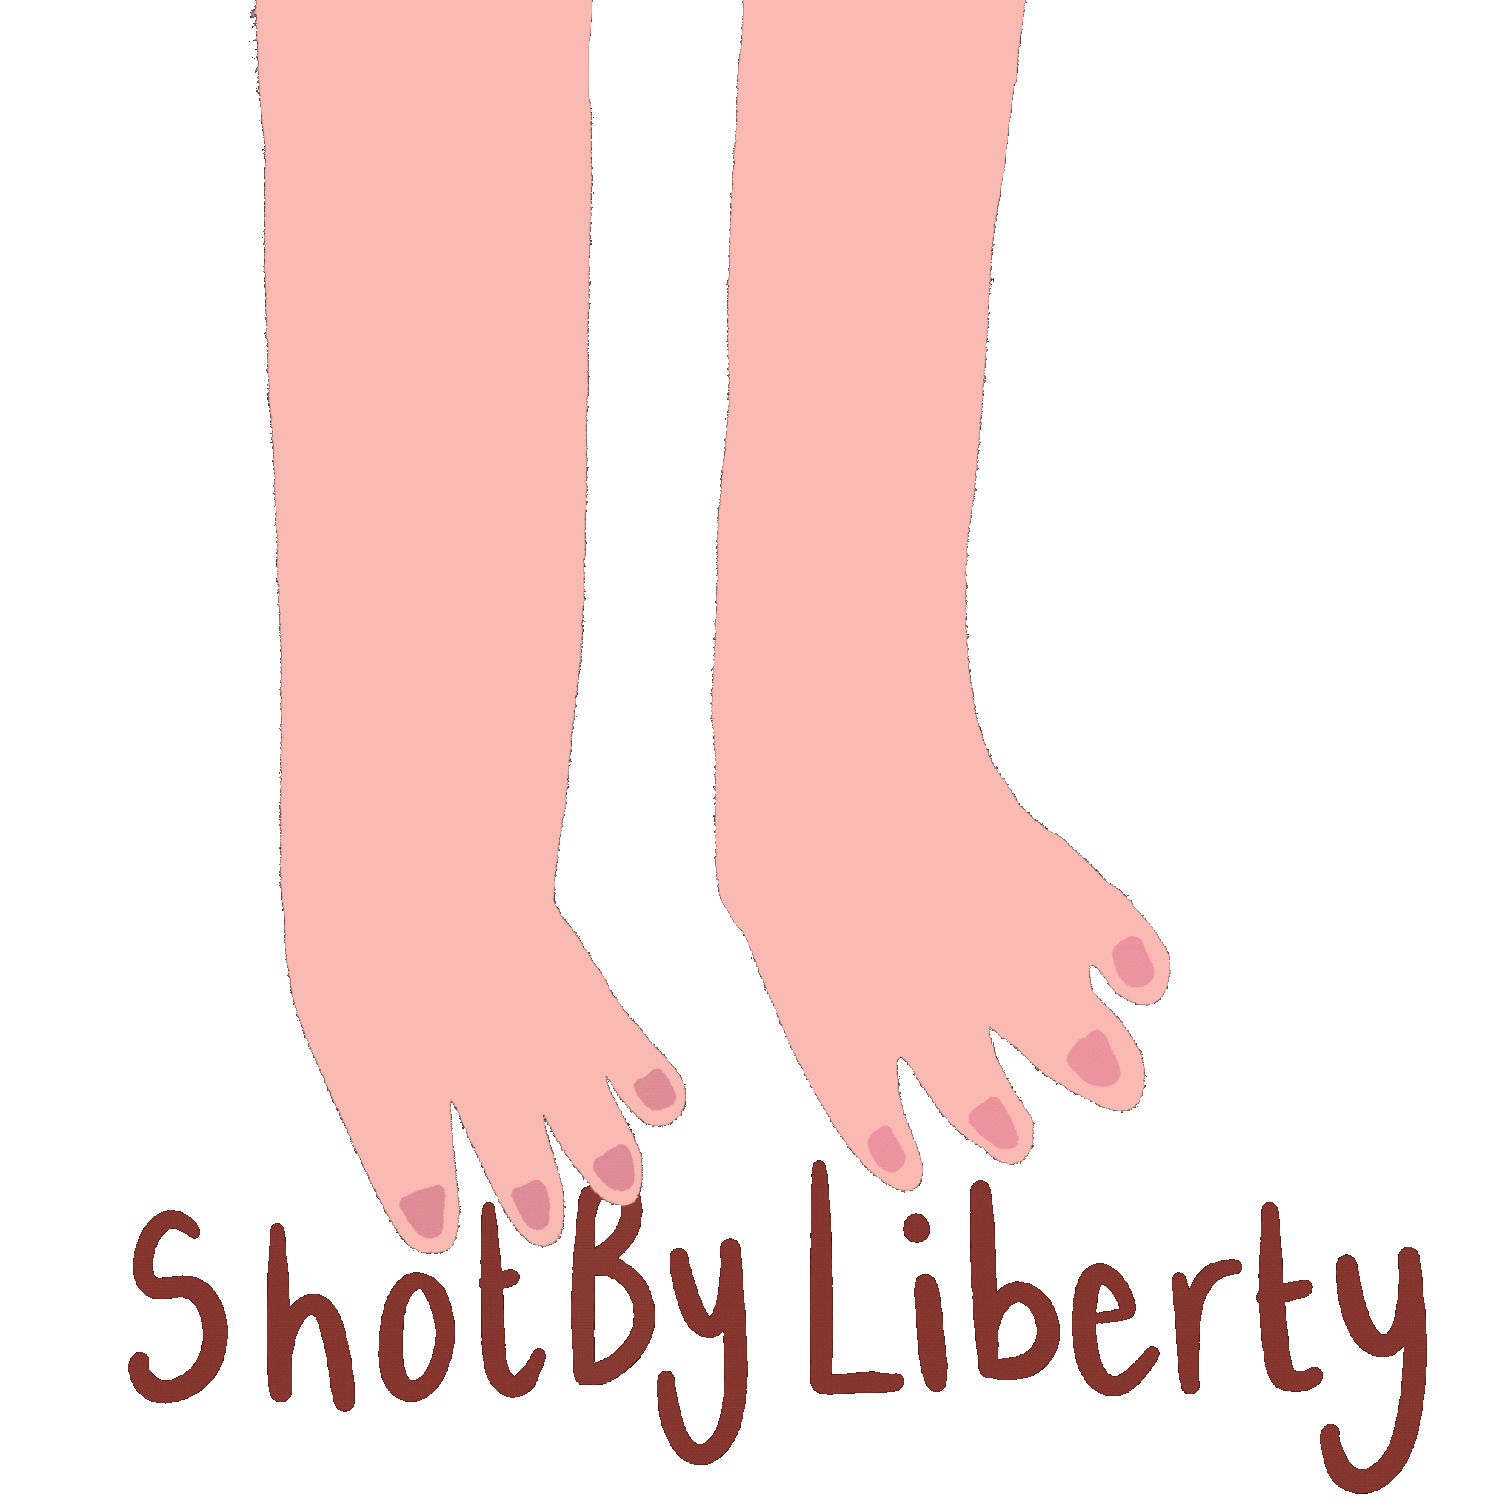 Shotbyliberty